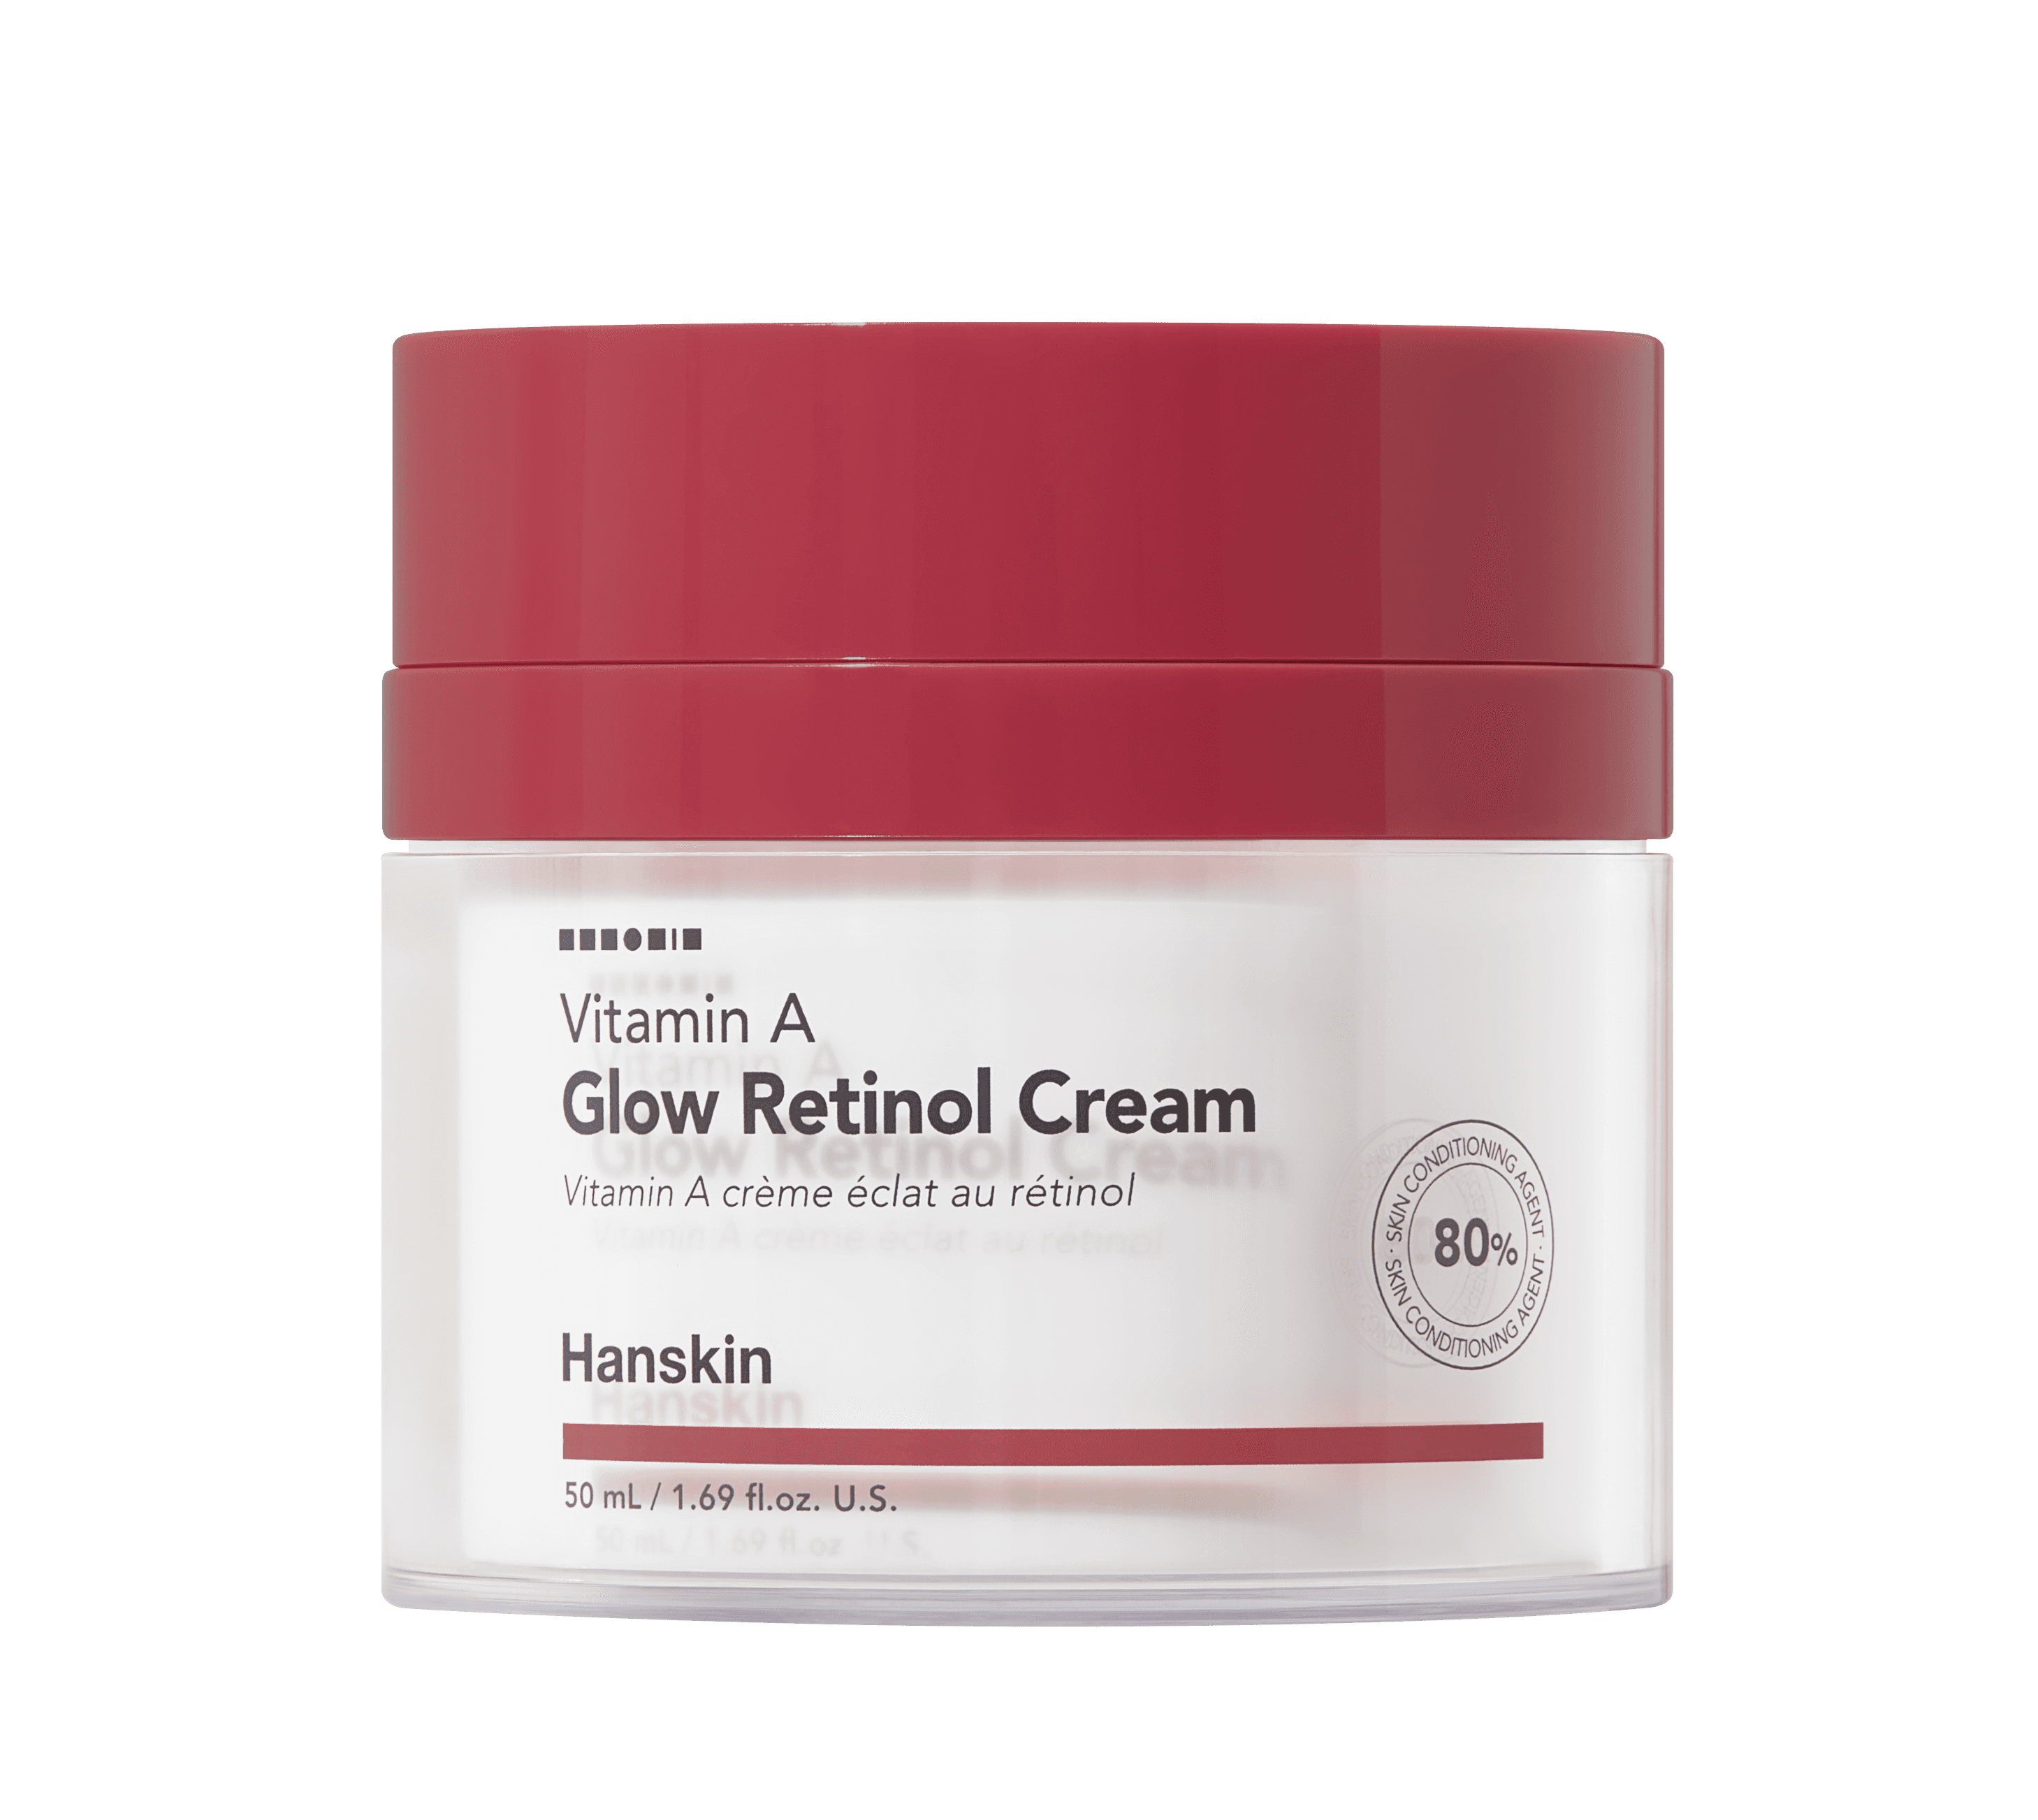 Vitamin A Glow Retinol Cream